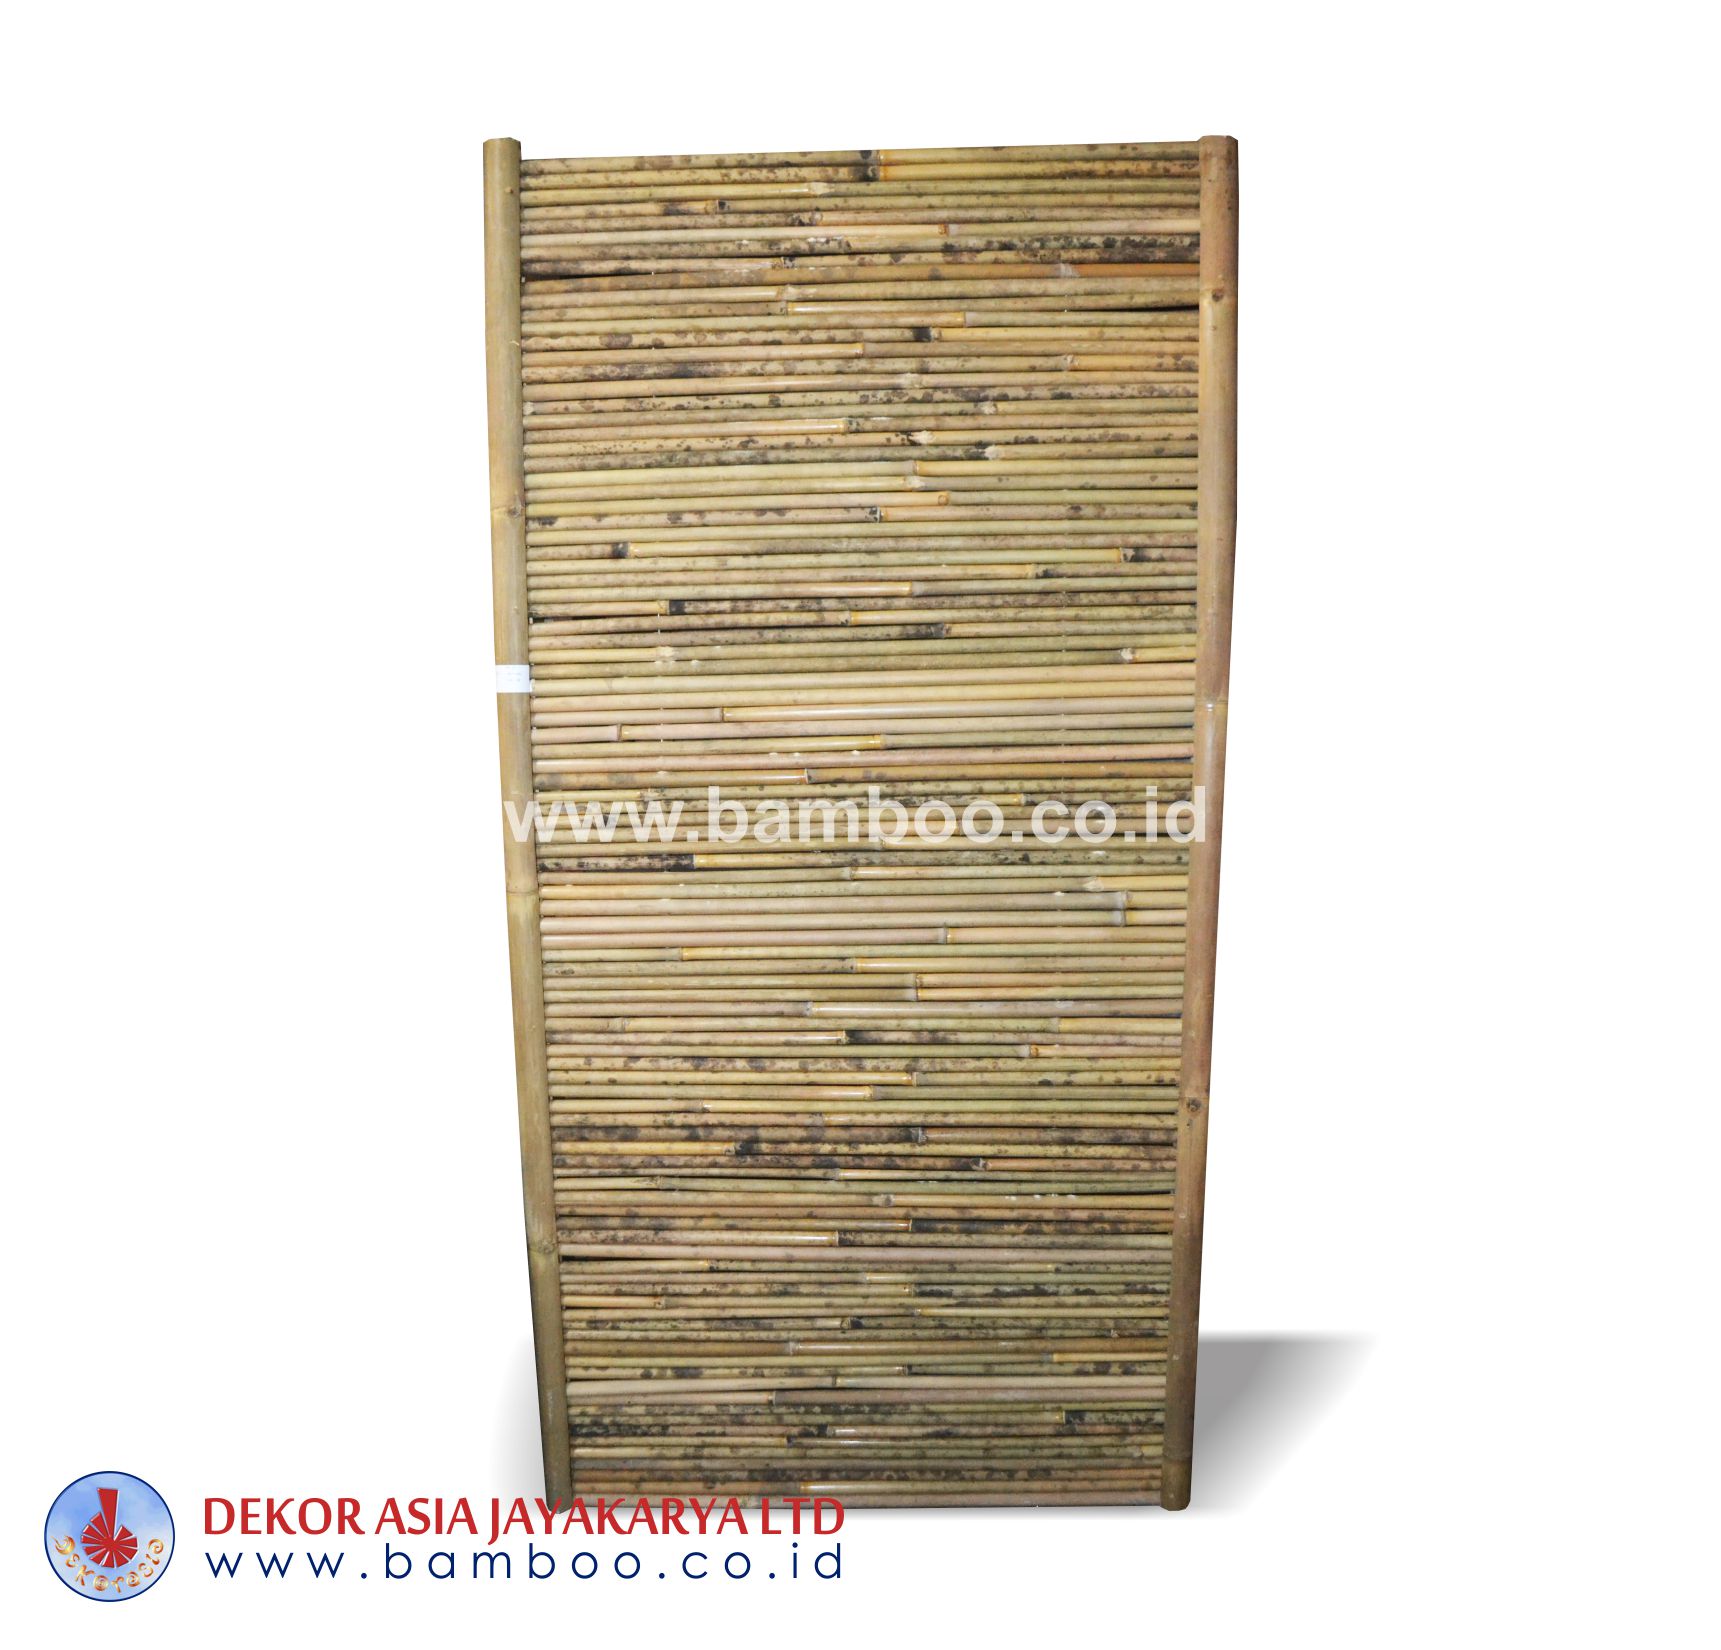 Natural bamboo fence frame horizontal - Bamboo fence natural